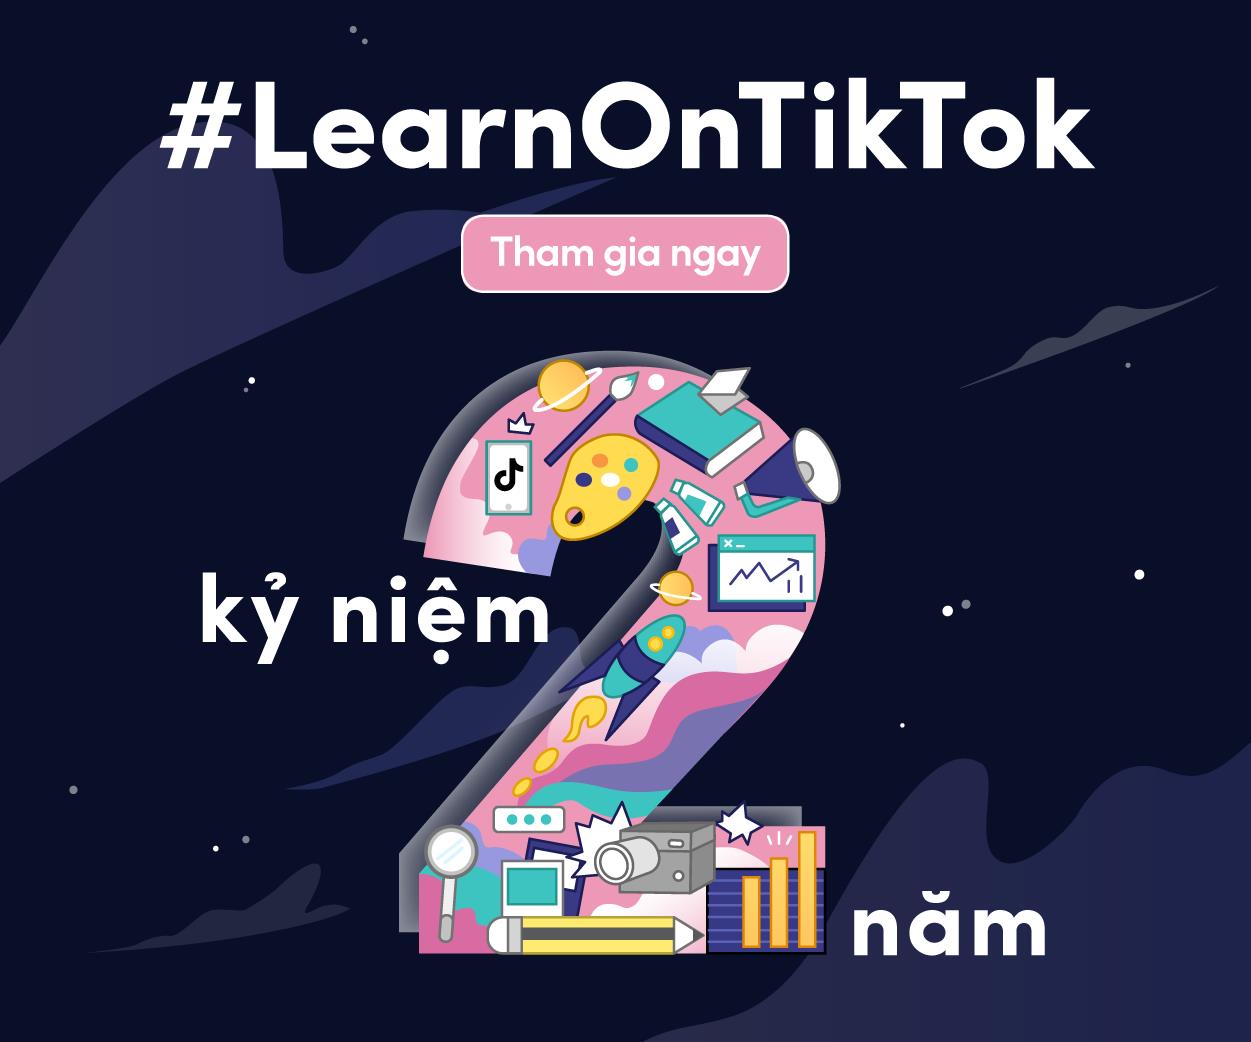 Hành trình 2 năm diệu kỳ của #LearnOnTikTok - Ảnh 2.